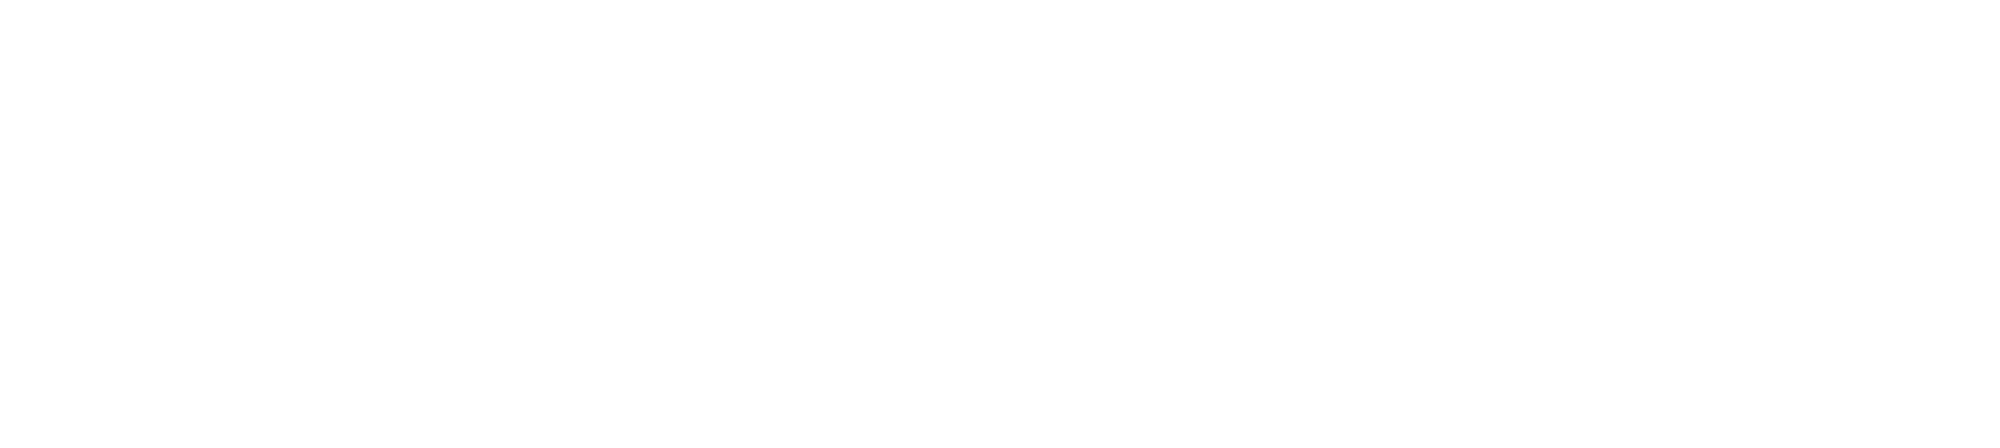 Avolve-Navigate-Logo-White